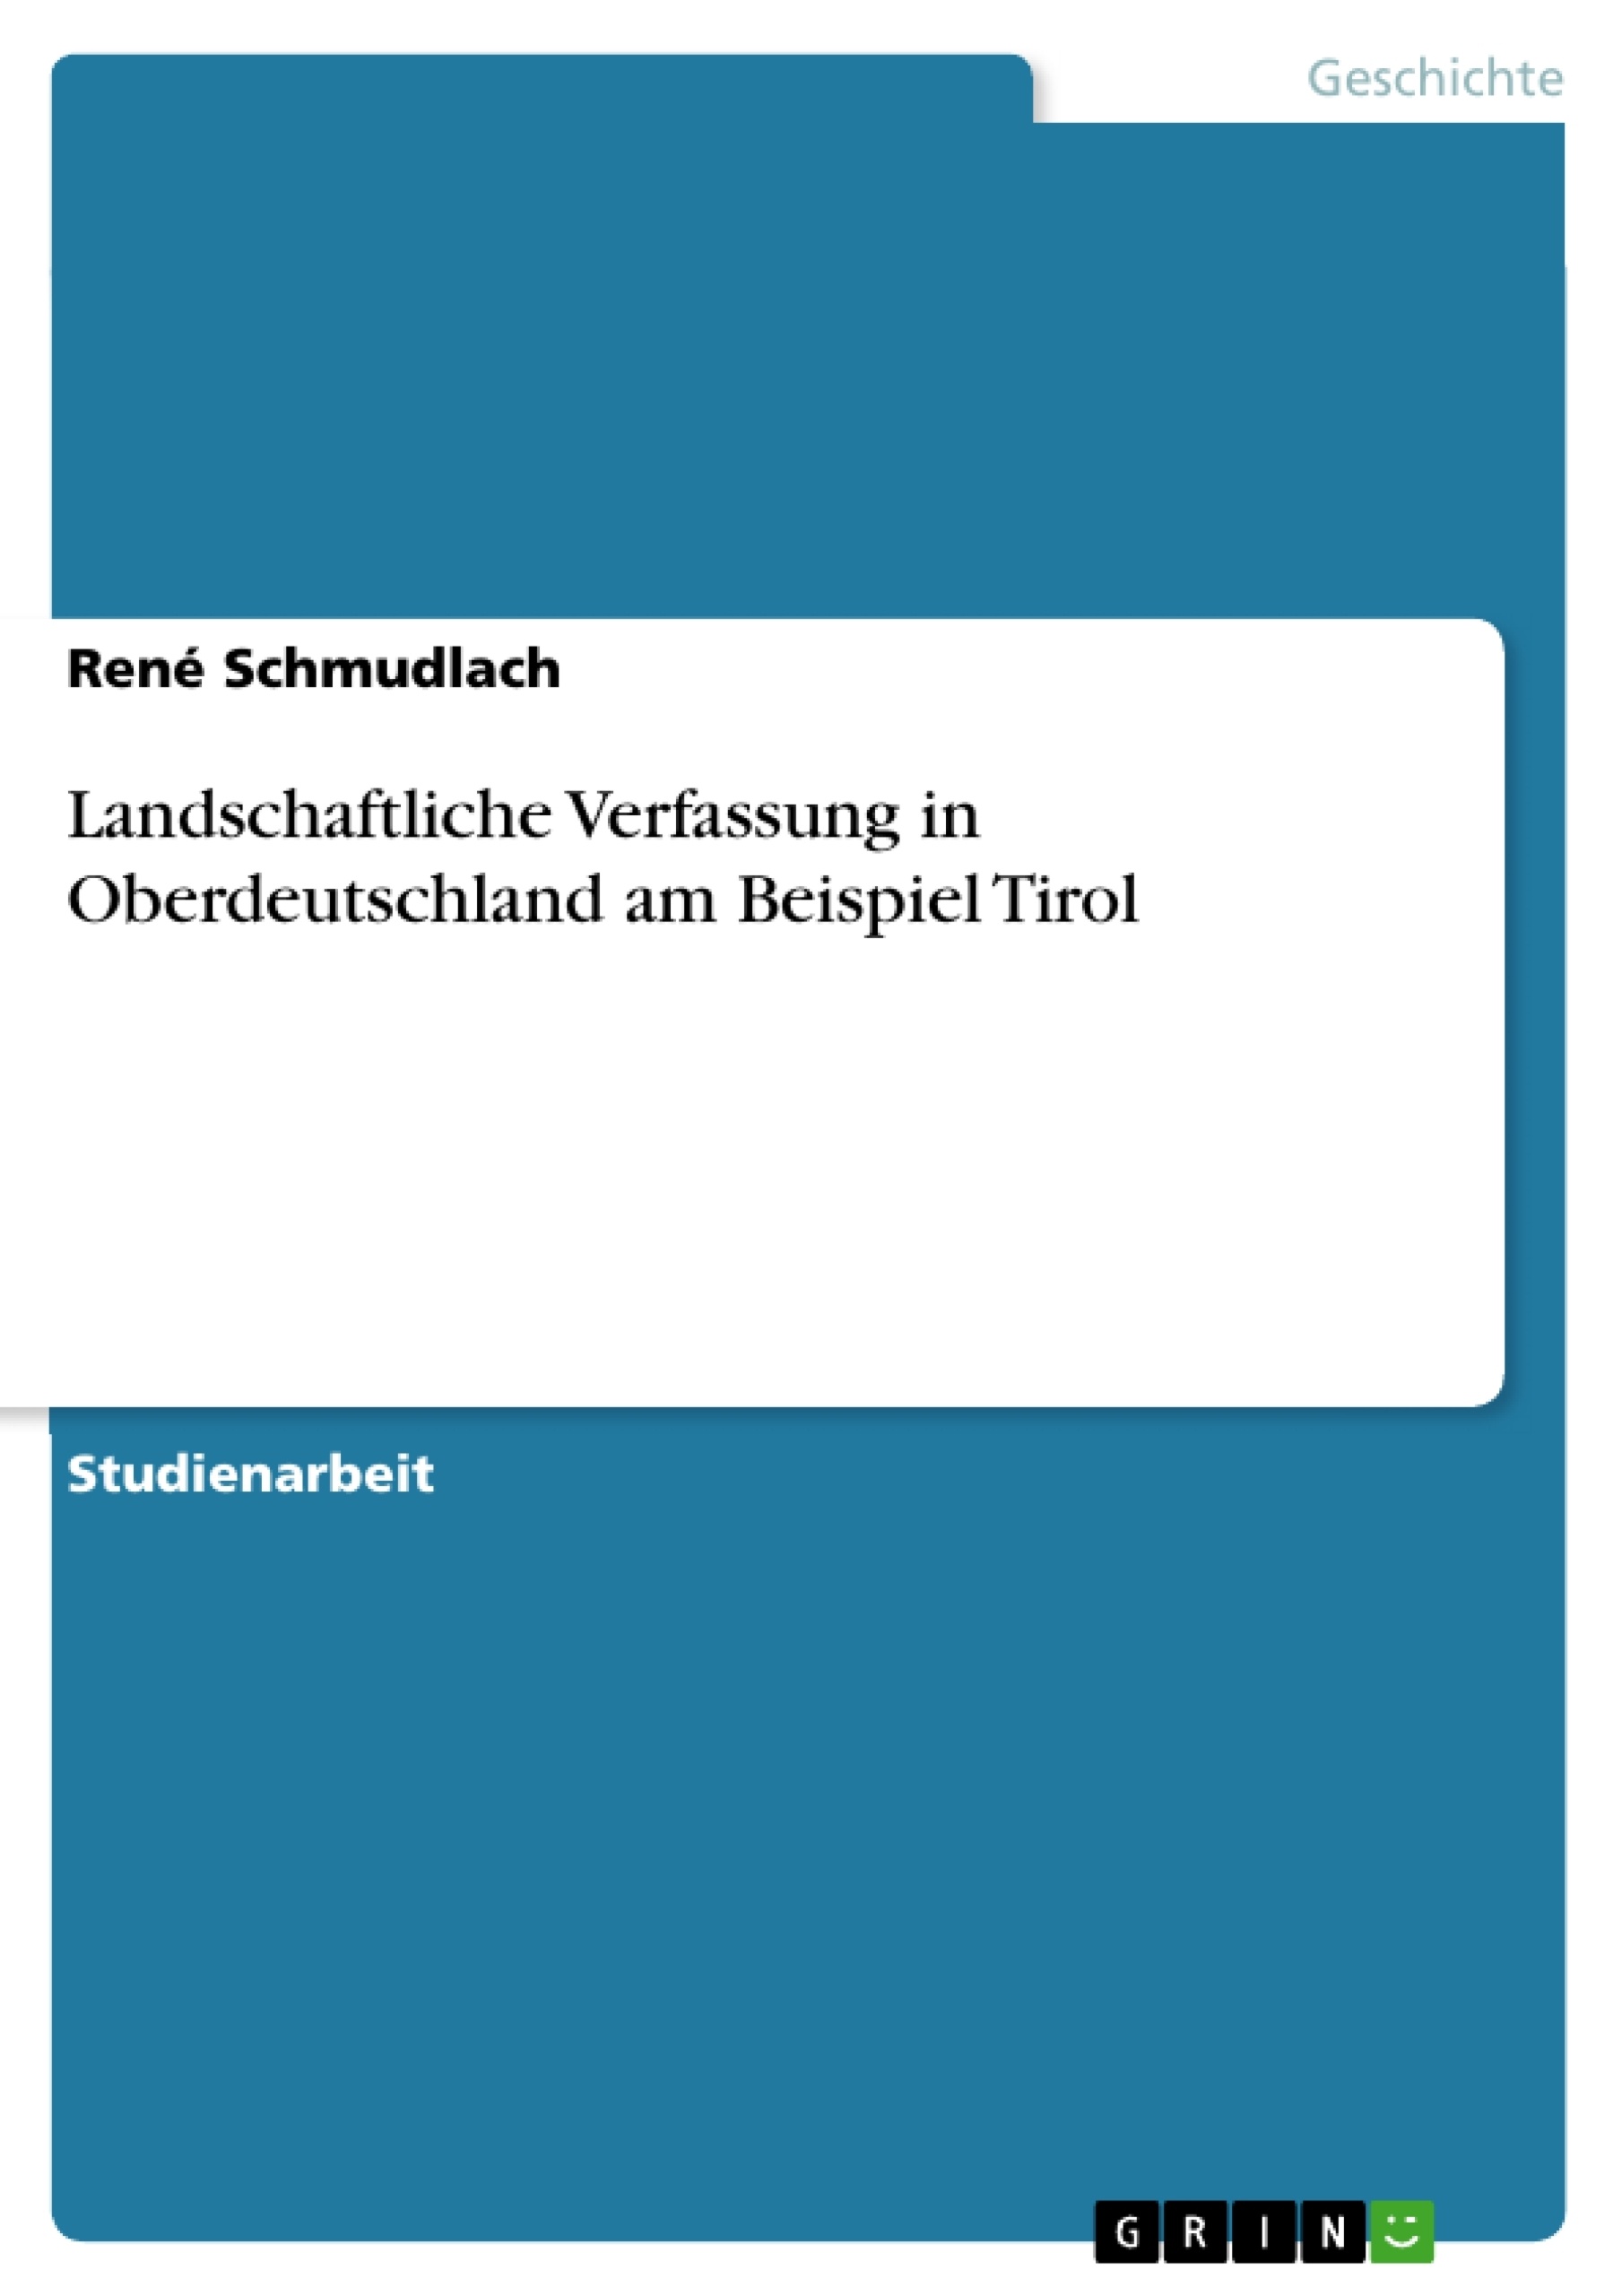 Título: Landschaftliche Verfassung in Oberdeutschland am Beispiel Tirol